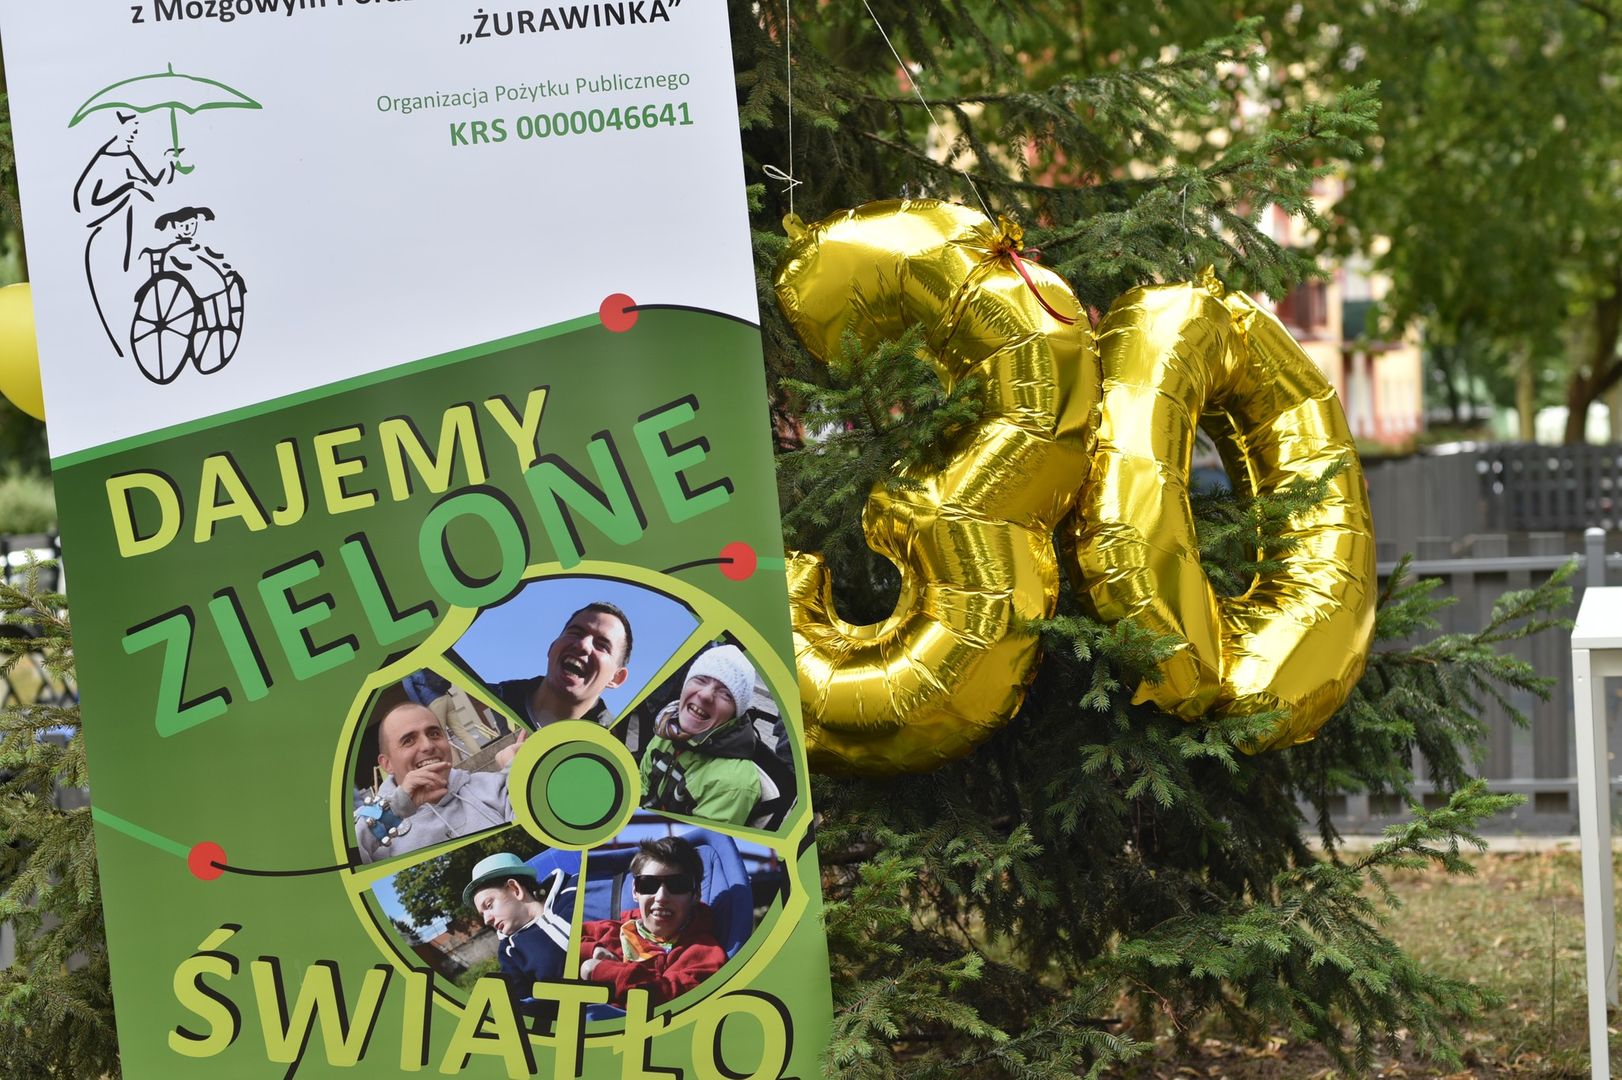 Na zdjęciu widoczny jest banner Stowarzyszenia Żurawinka z napisem "Dajemy zielone światło osobom z MPD" oraz dwa, złote balony tworzące liczbę 30